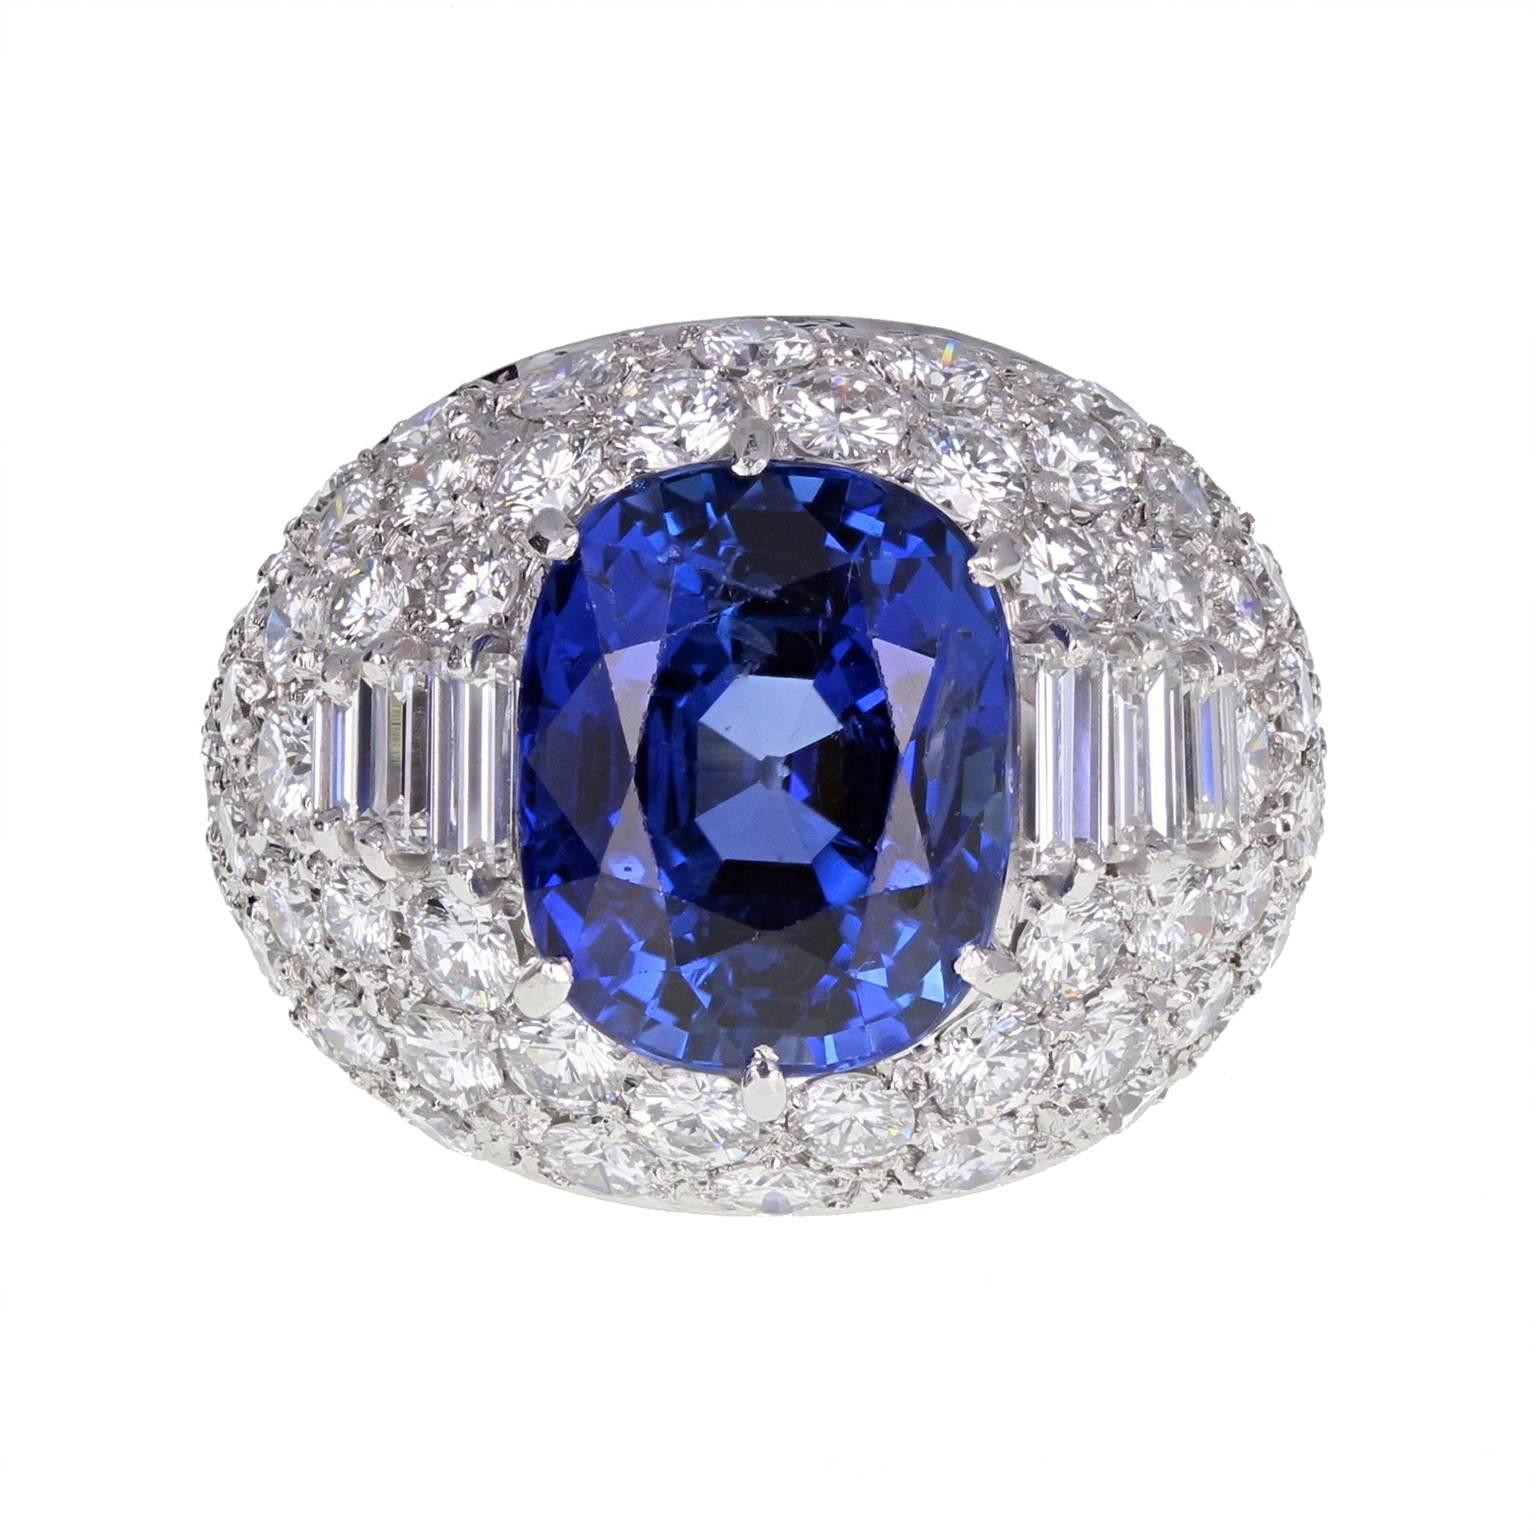 bvlgari blue sapphire ring